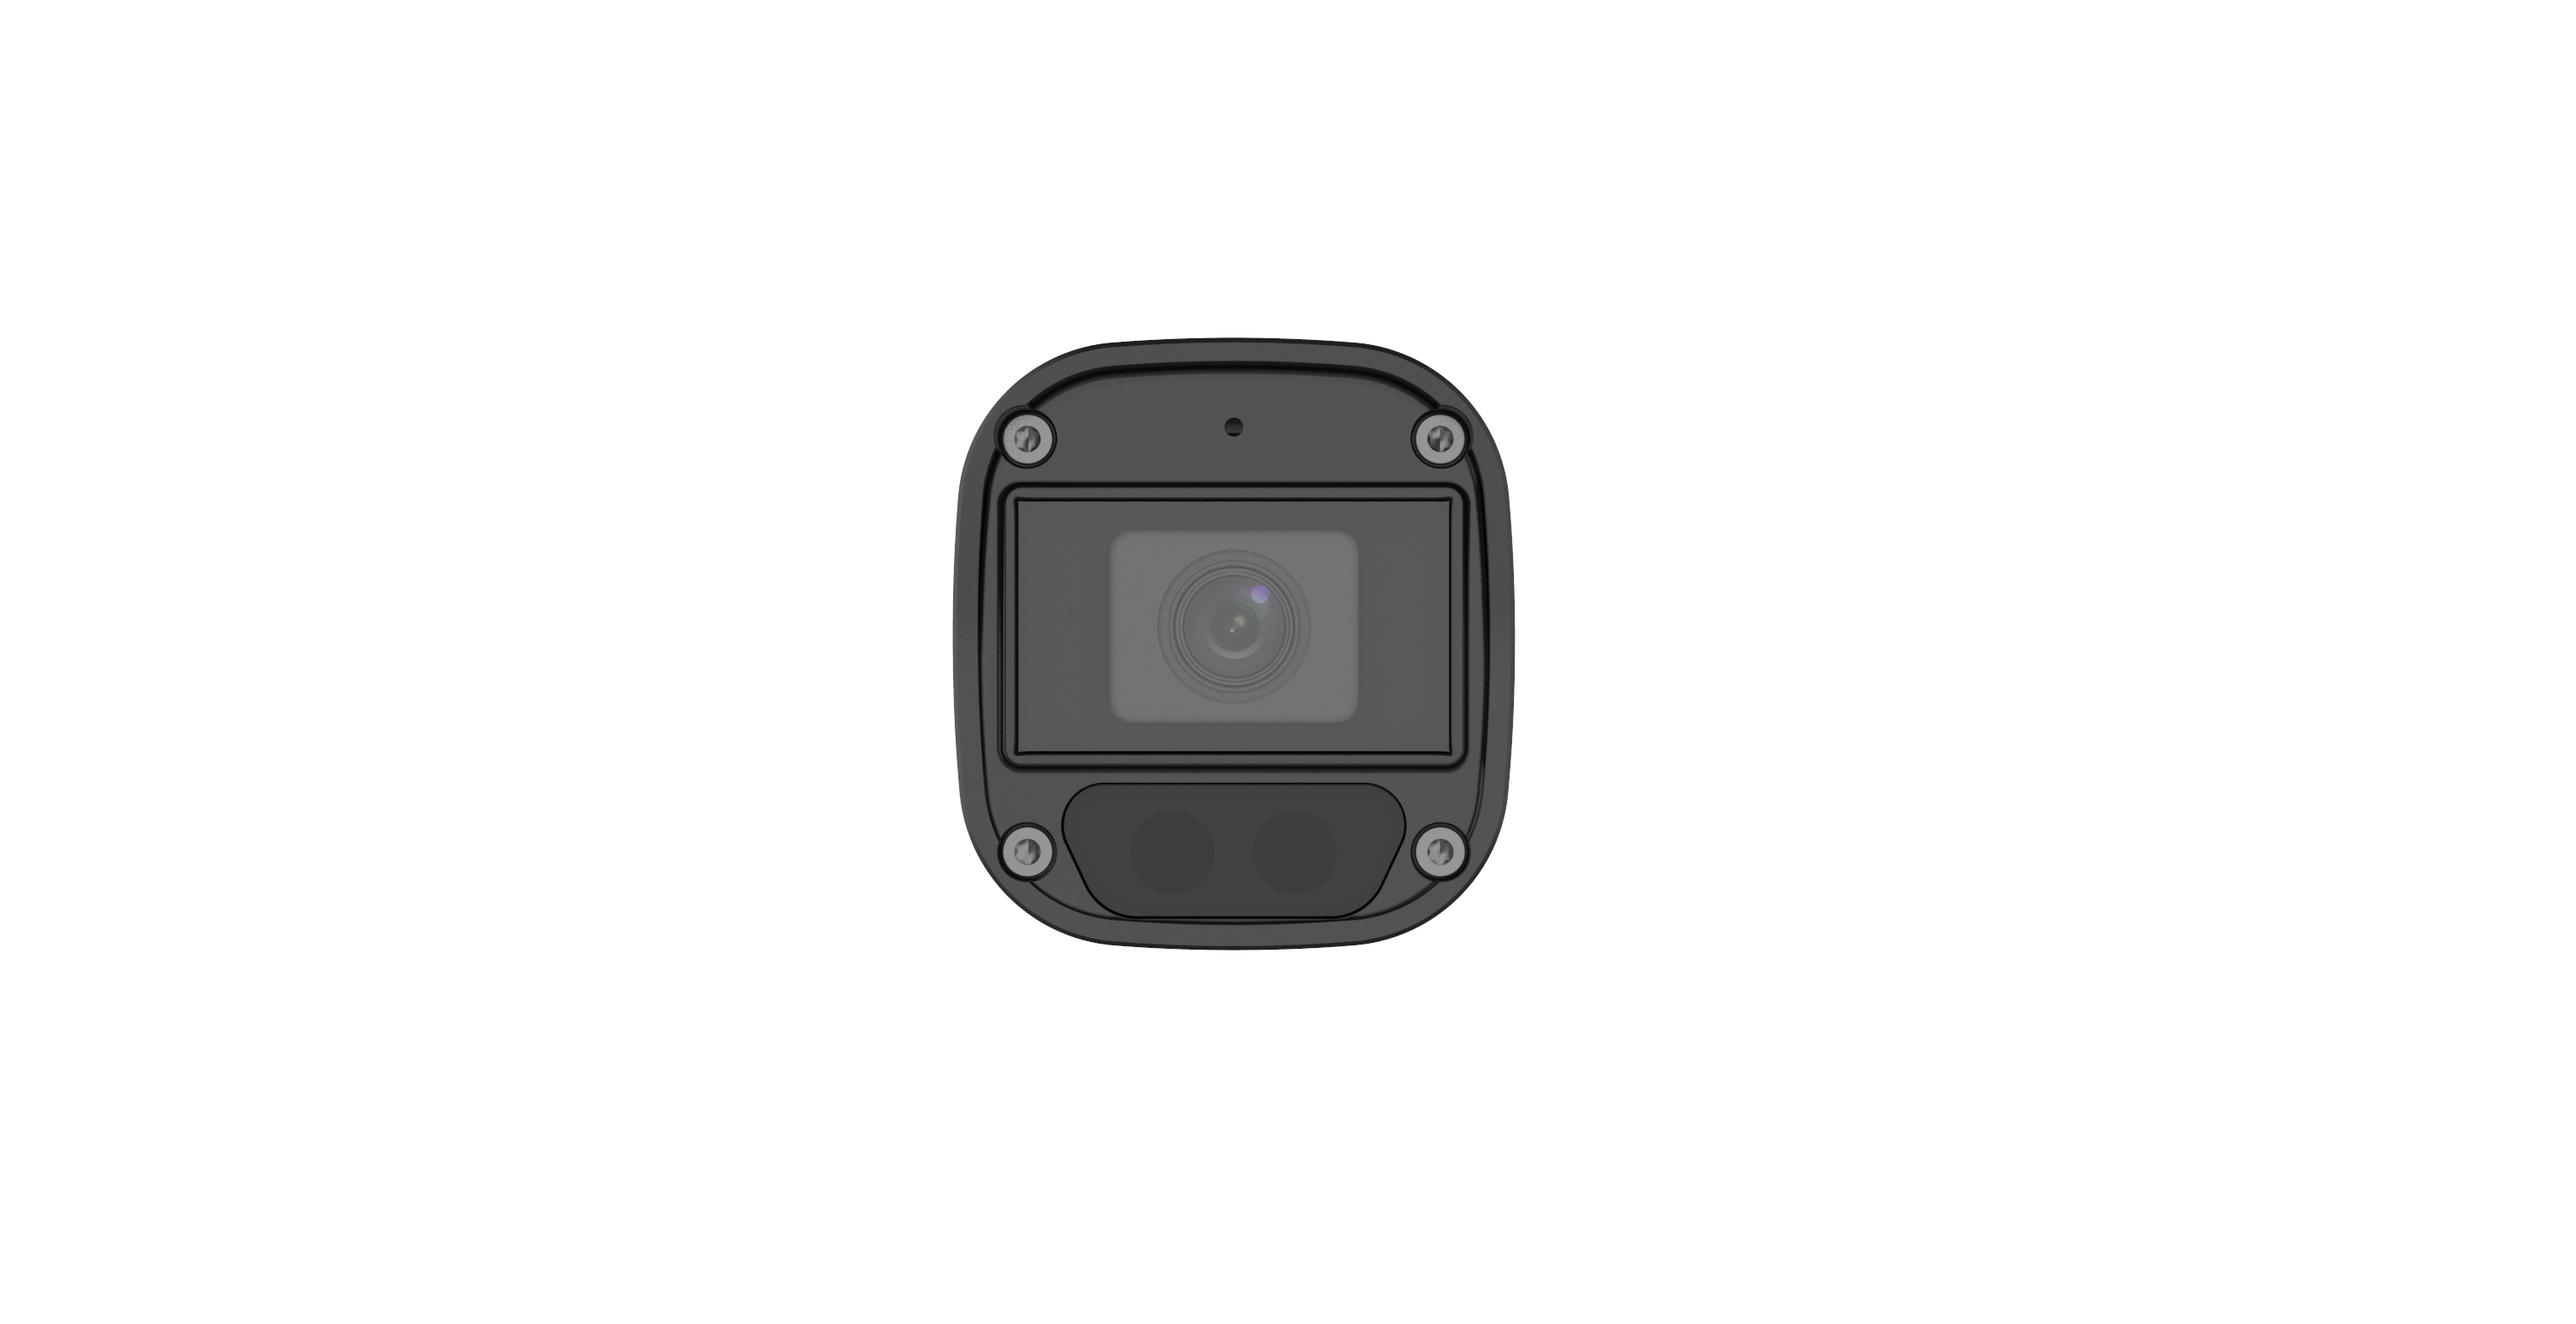 Цилиндрическая видеокамера Uniarch IPC-B124-APF28